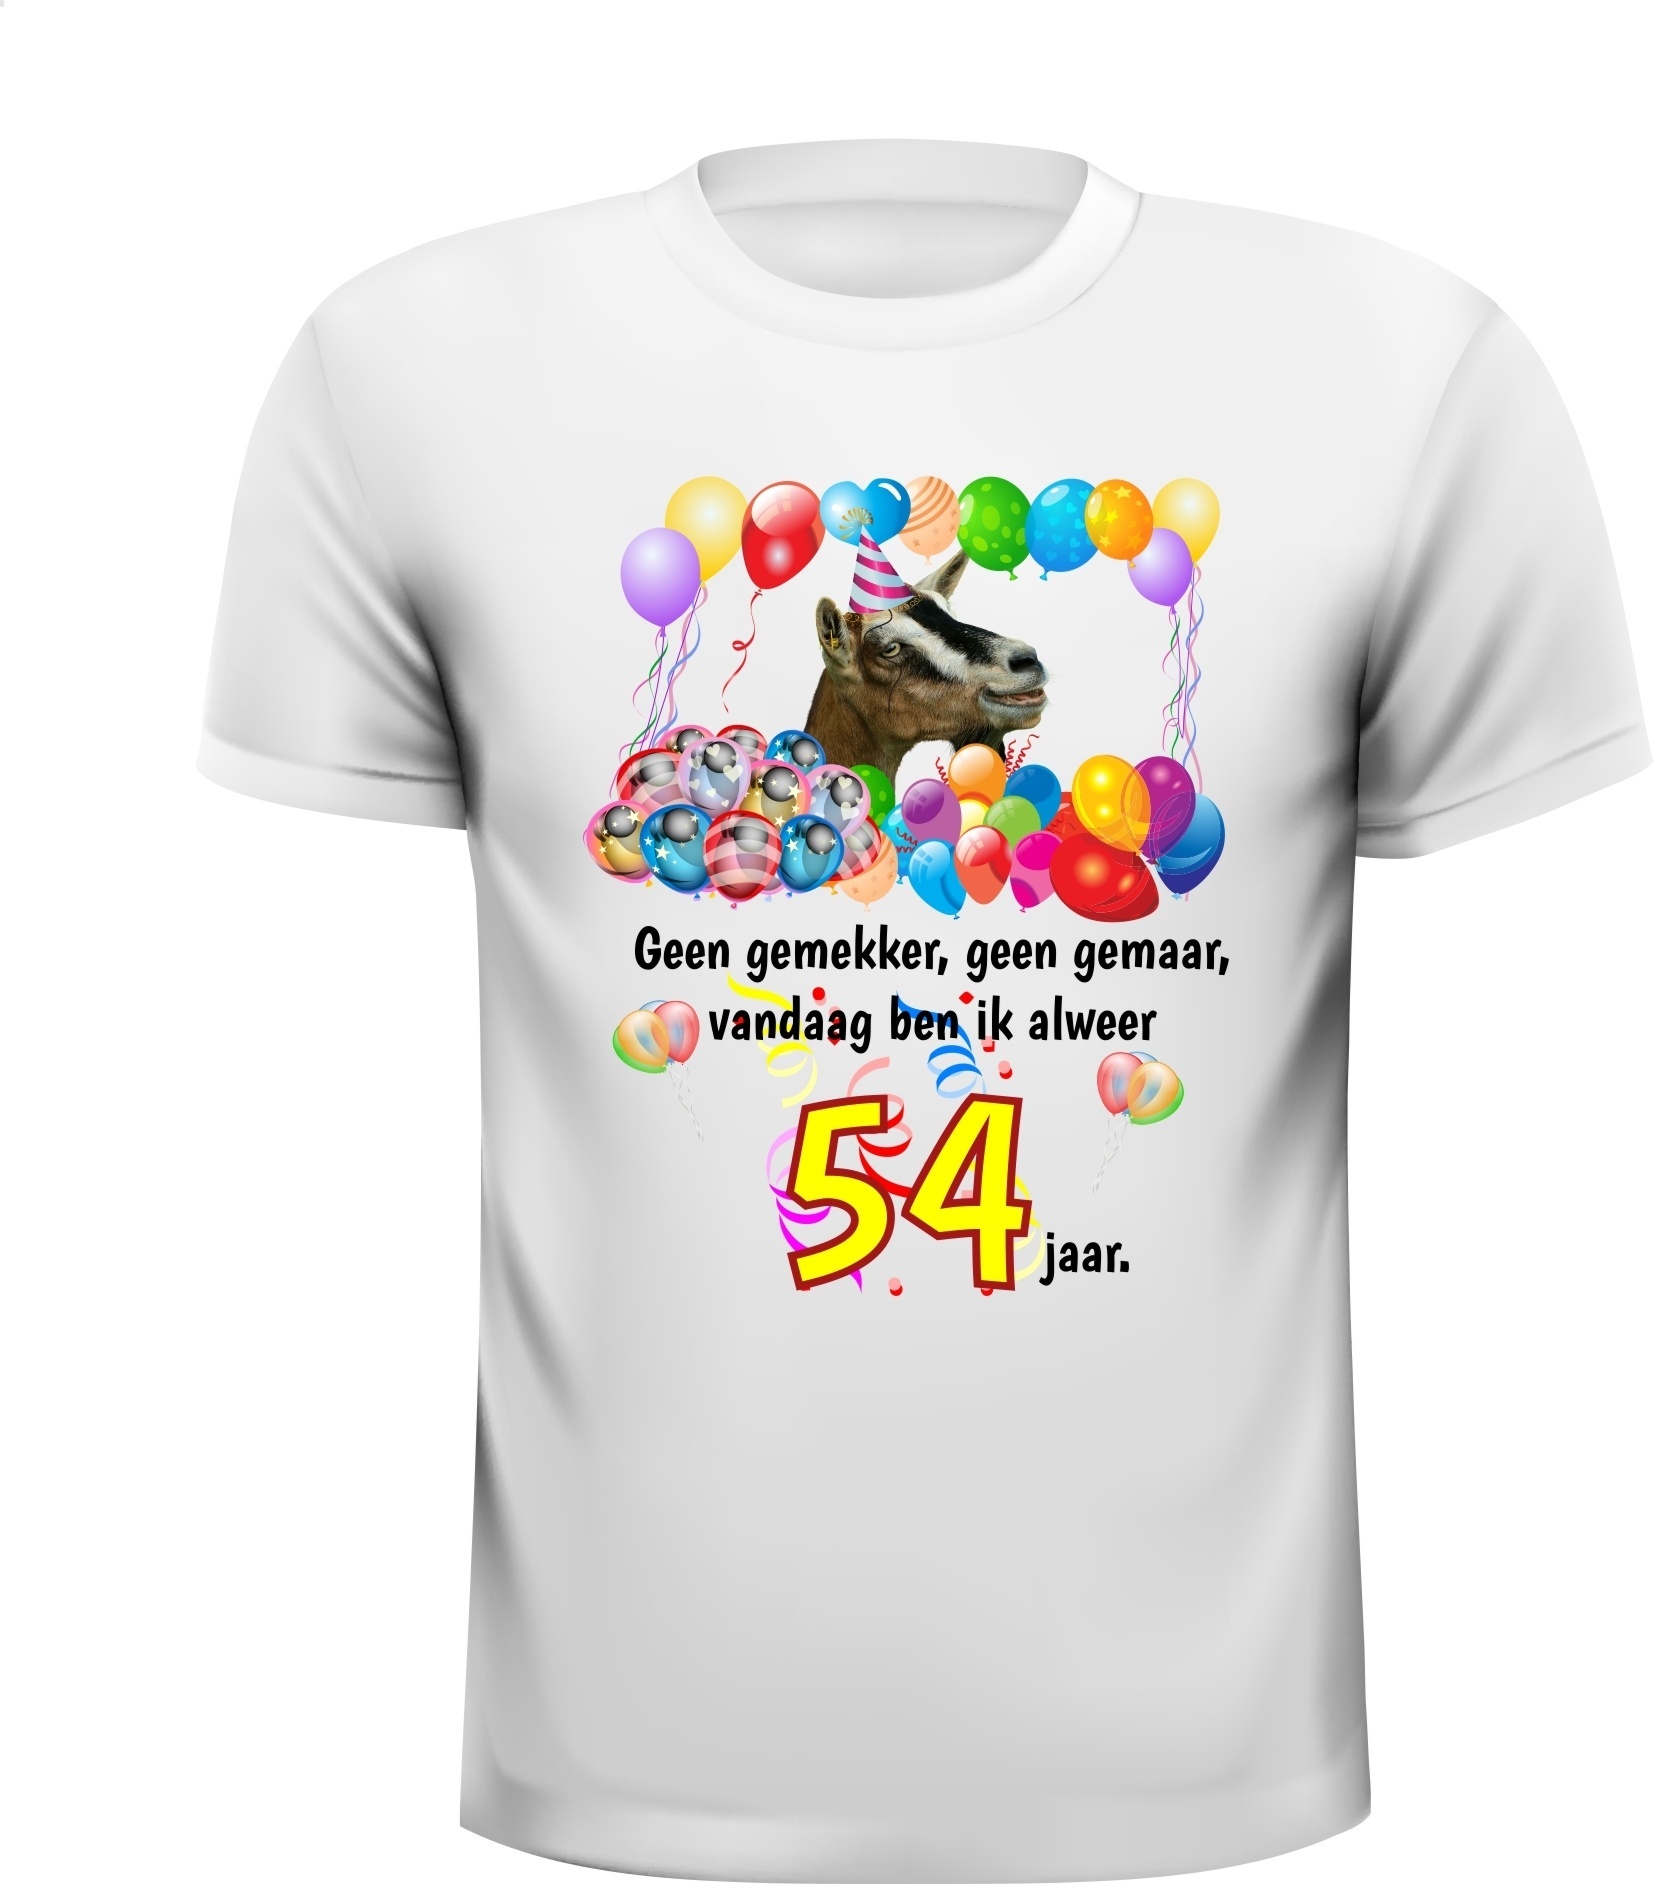 Feestelijk full colour verjaardag shirt 54 jaar met vrolijke print